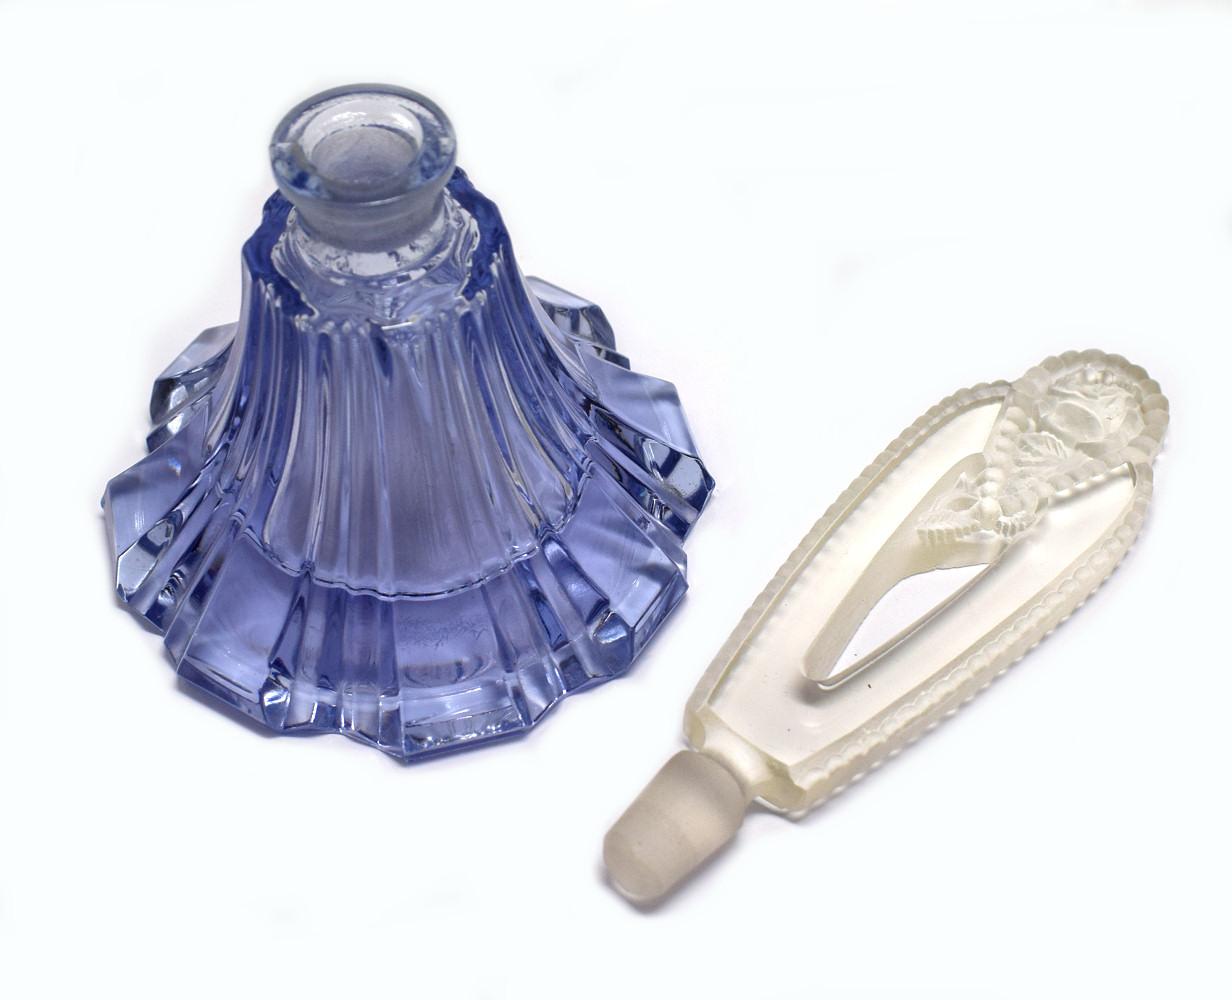 Nous vous présentons ce flacon de parfum Art déco des années 1930 en verre bleu et transparent. Bel objet, sans aucun dommage, juste des signes mineurs d'utilisation. Le bouchon est orné d'une rose en relief et s'adapte parfaitement à la base qui